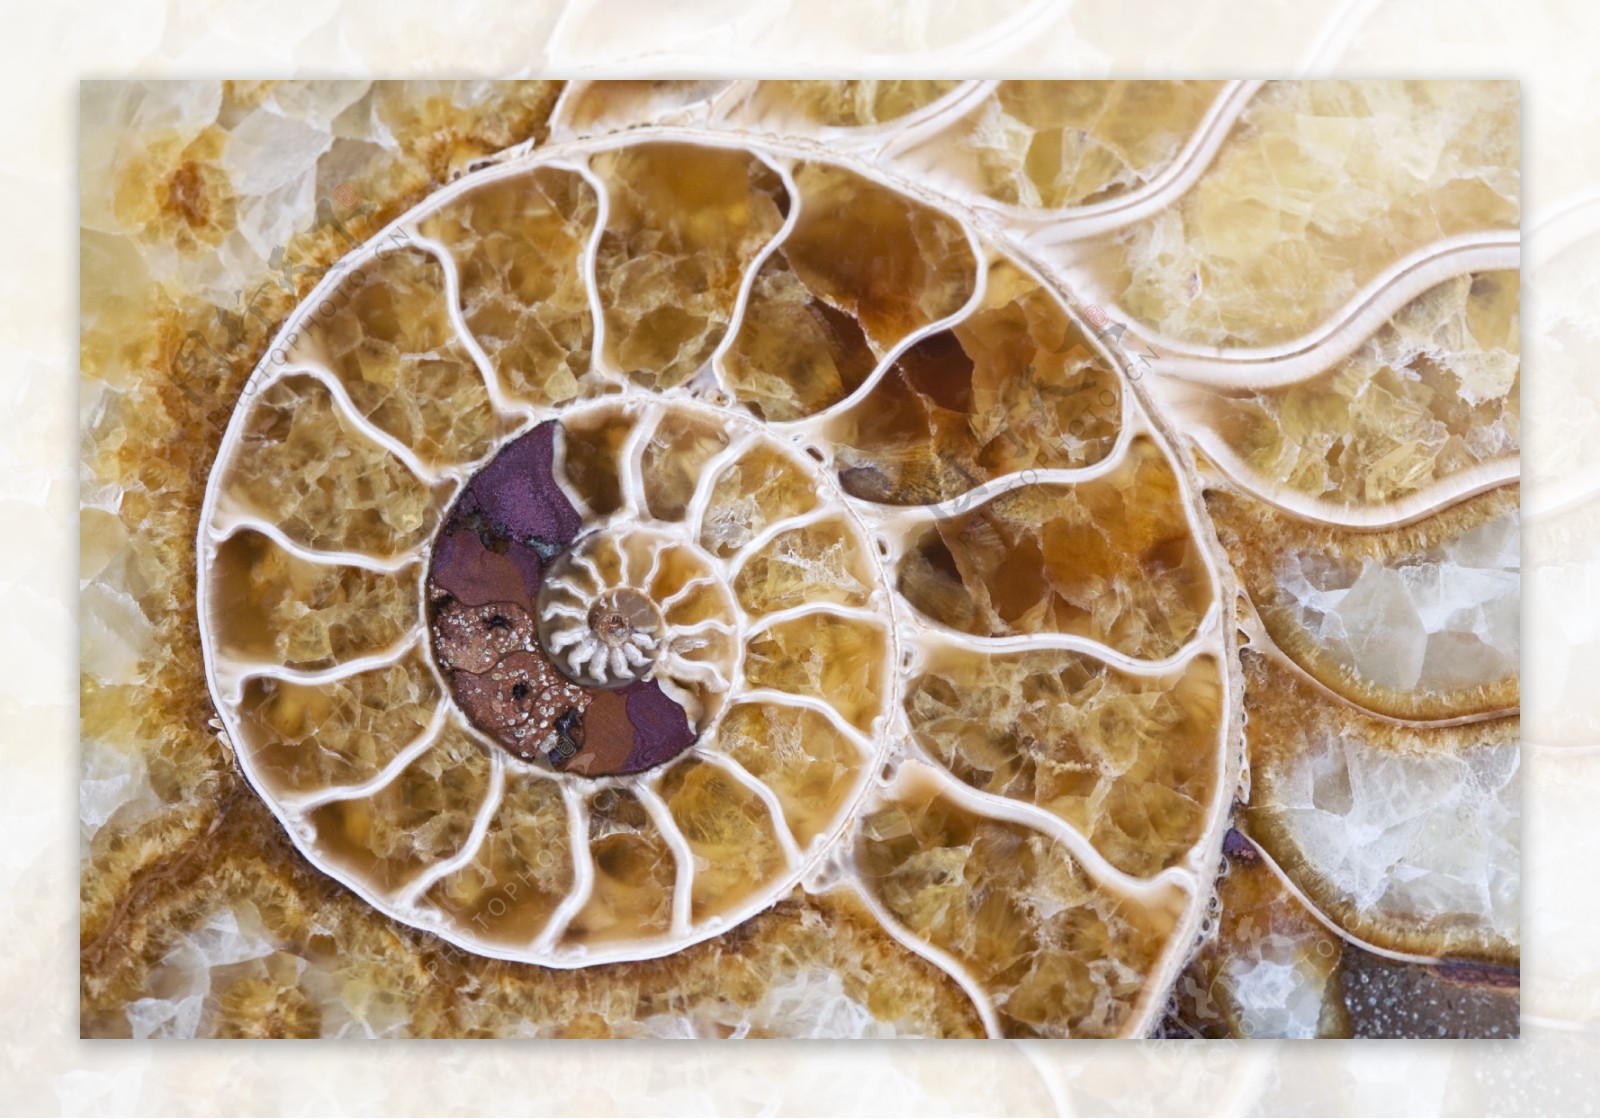 海螺化石图片